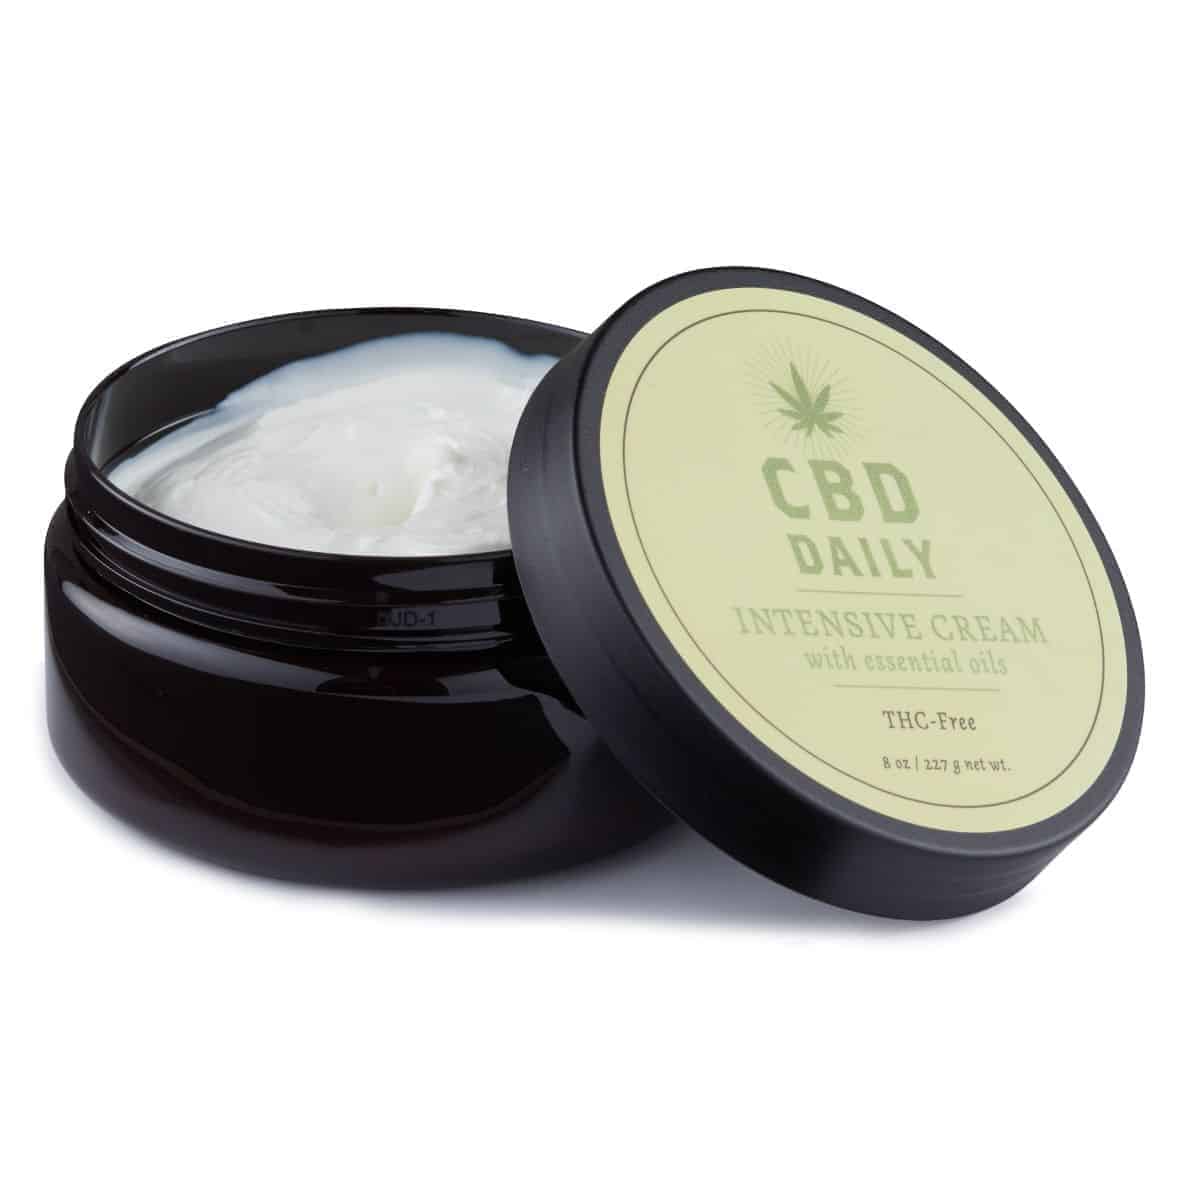 CBD Daily Intensive Cream - Original Strength - 8 oz | Shop CBD Daily online